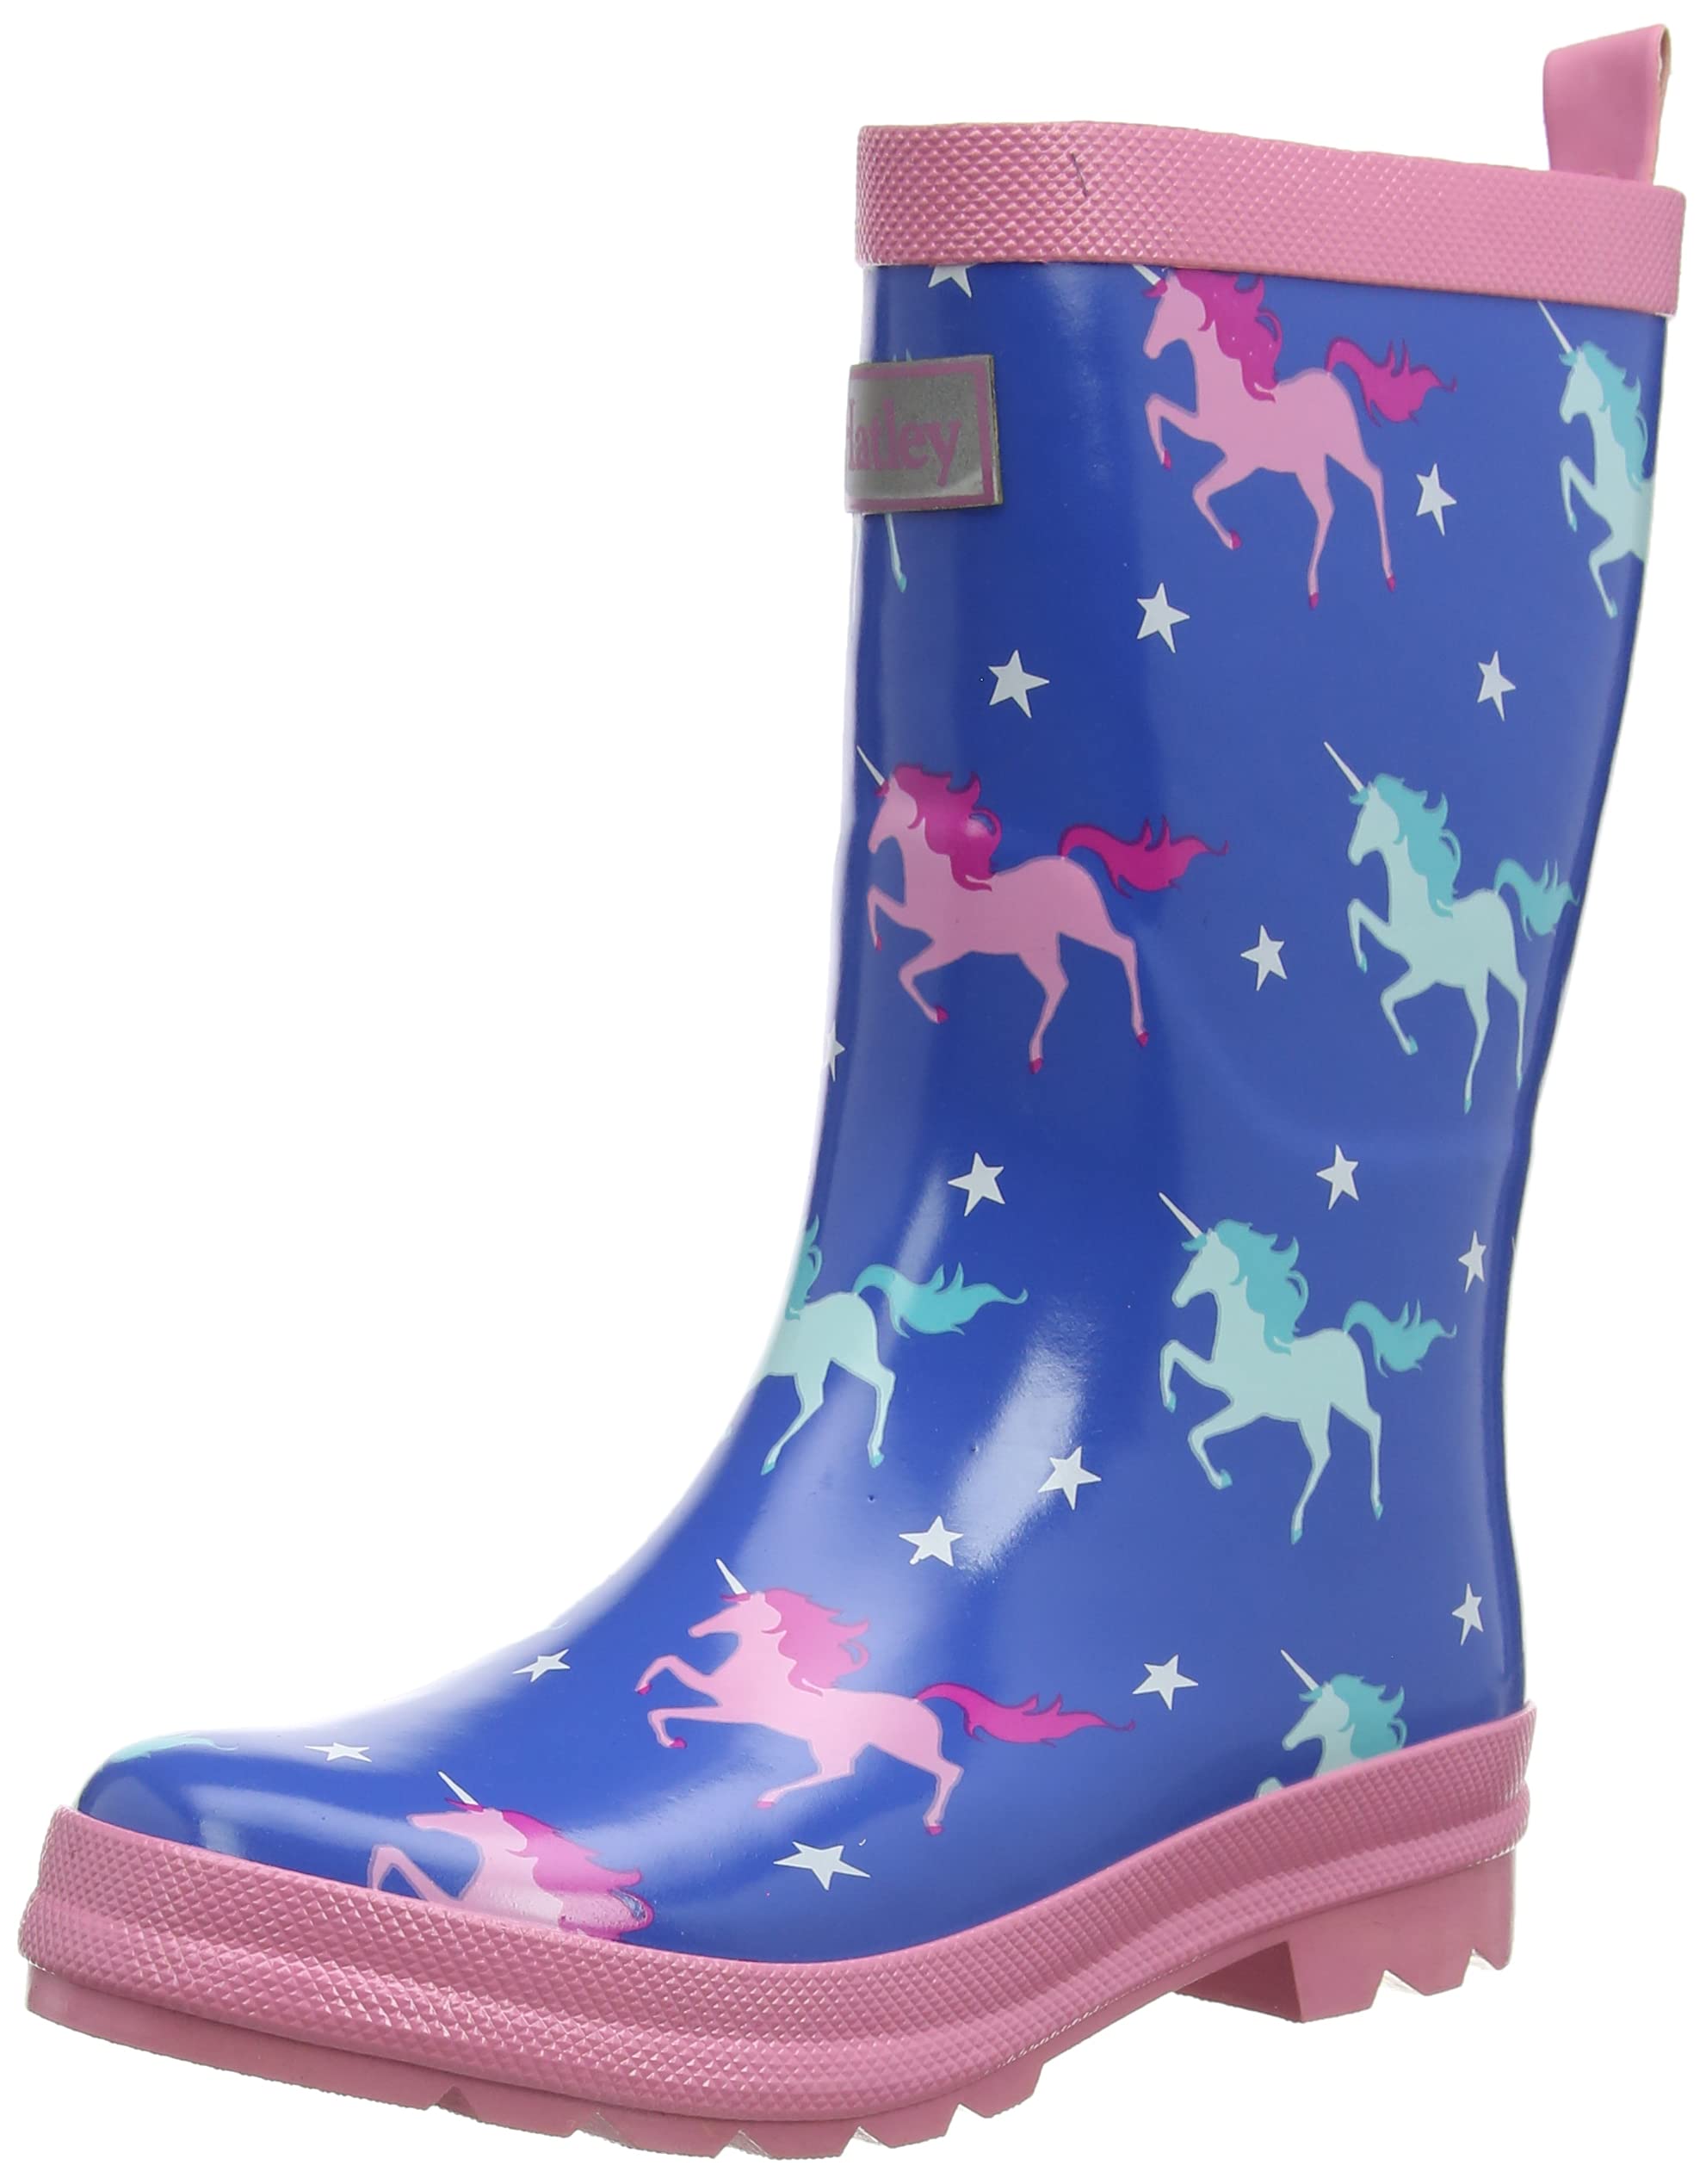 Hatley Girls Rain Boot, Twinkle Unicorns, 4 Toddler